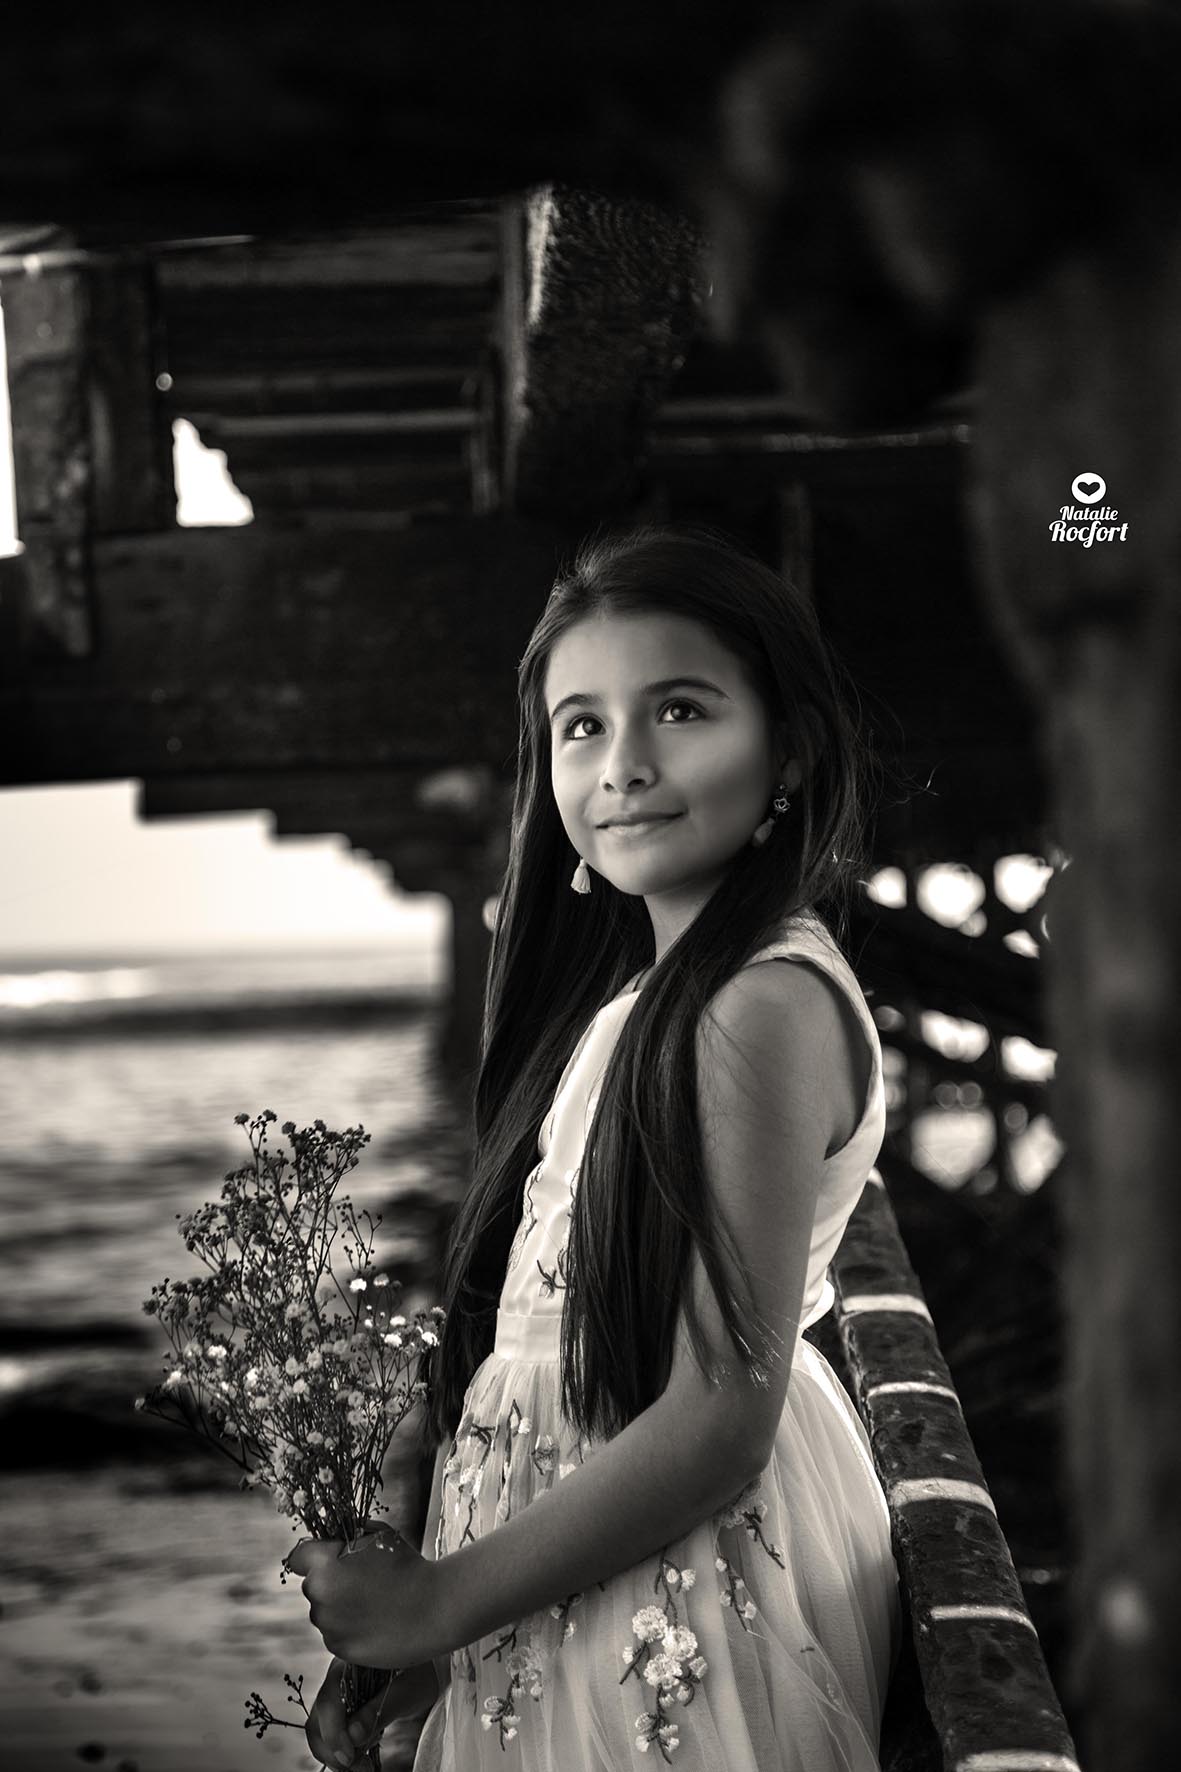 Niña posando en el muelle de la playa Huanchaco, Trujillo. Natalie Rocfort photography